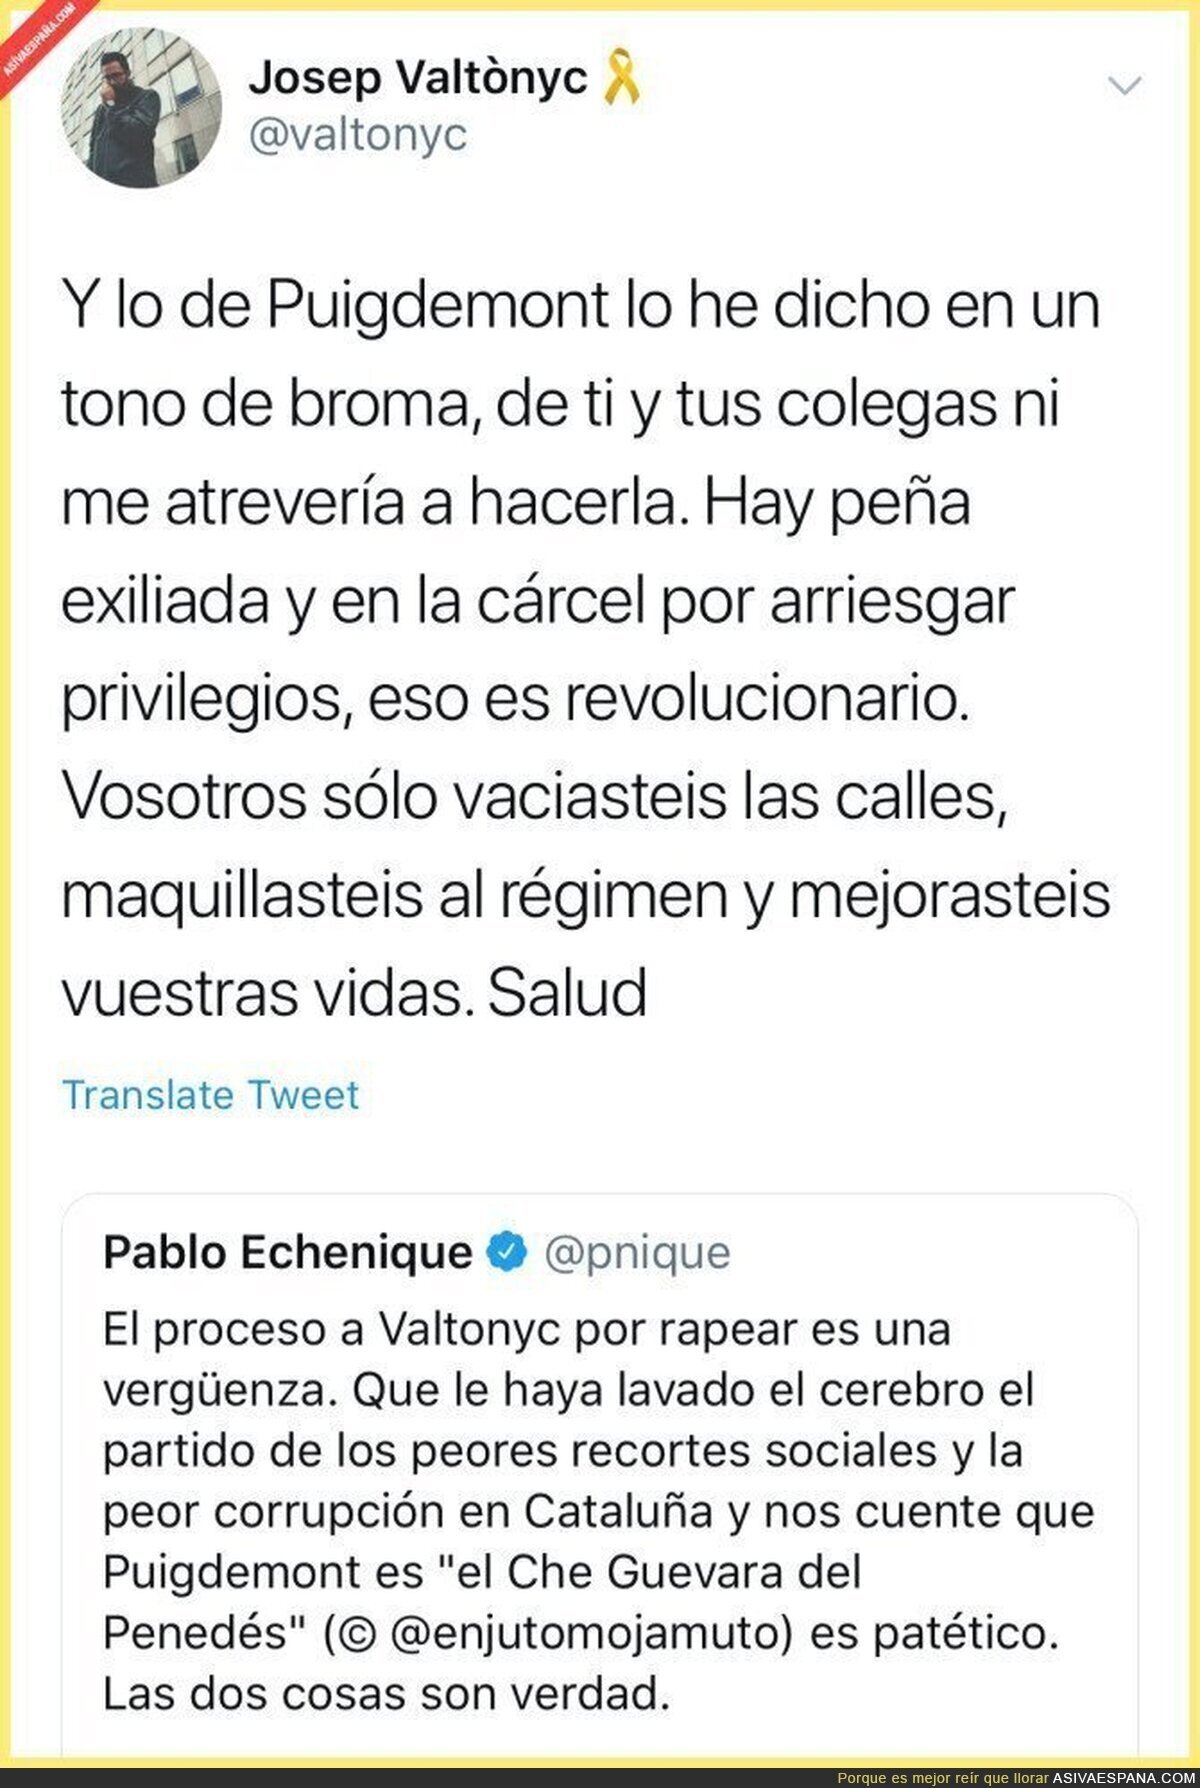 El tremendo ZAS de Valtonyc a Pablo Echenique tras decir que Puigdemont le ha lavado el cerebro 